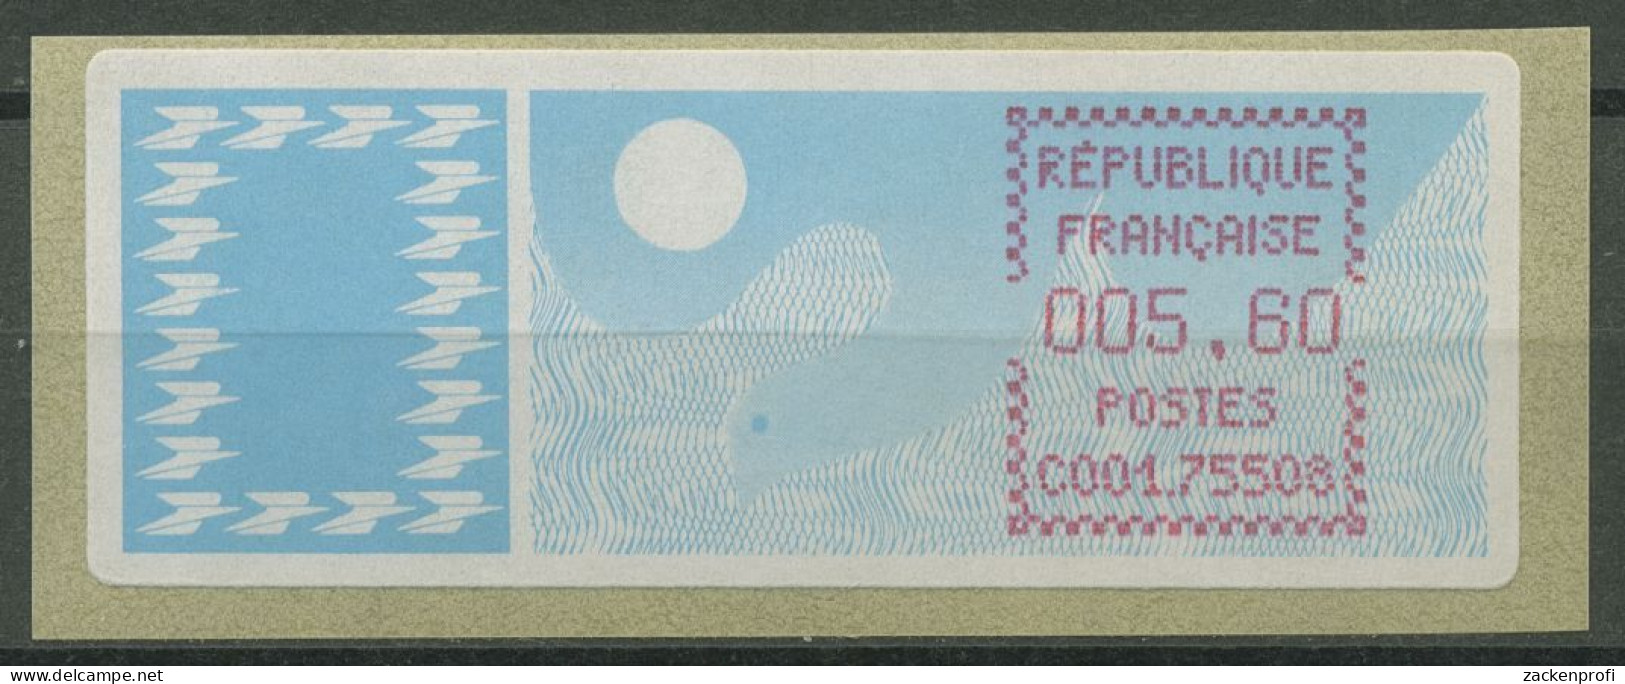 Frankreich ATM 1985 Taube Einzelwert ATM 6.9 Zd Postfrisch - 1985 « Carrier » Paper